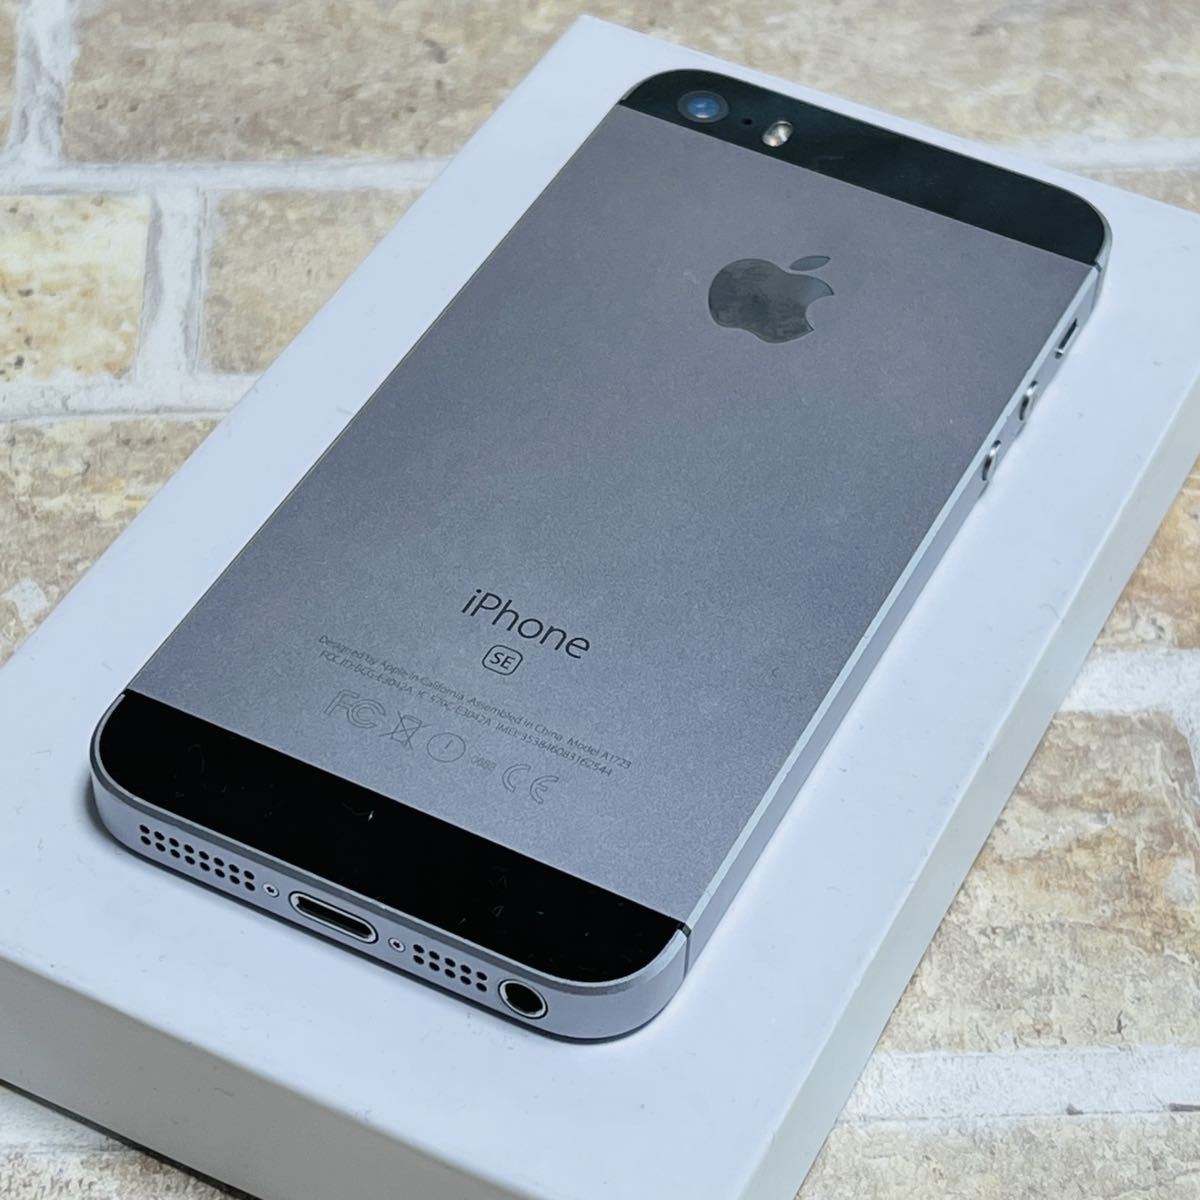 SIMフリー iPhoneSE 64GB 143 スペースグレイ 電池新品 完全動作品